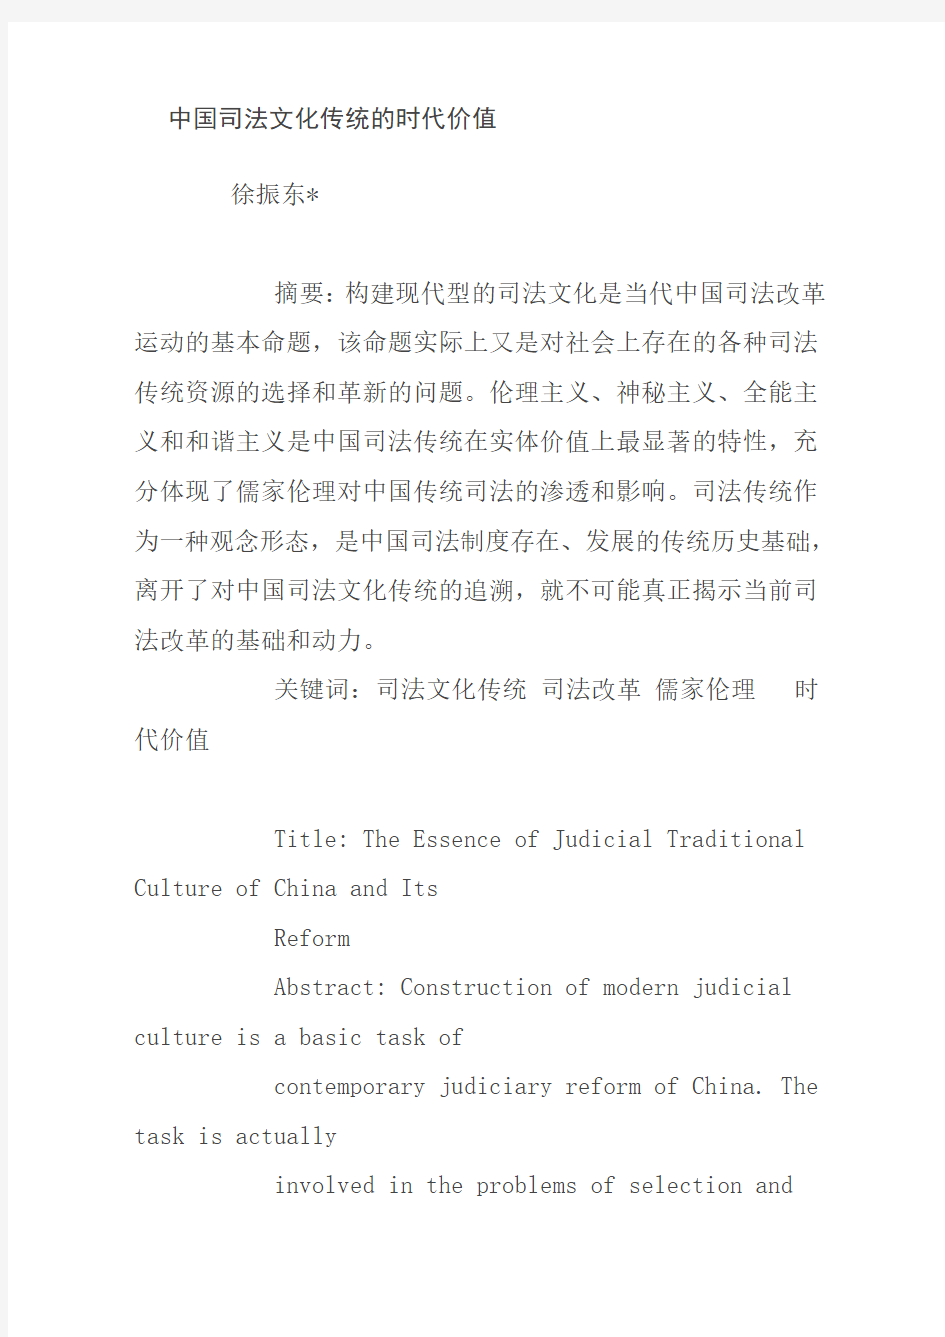 中国司法文化传统的时代价值--法制史大家参考一下